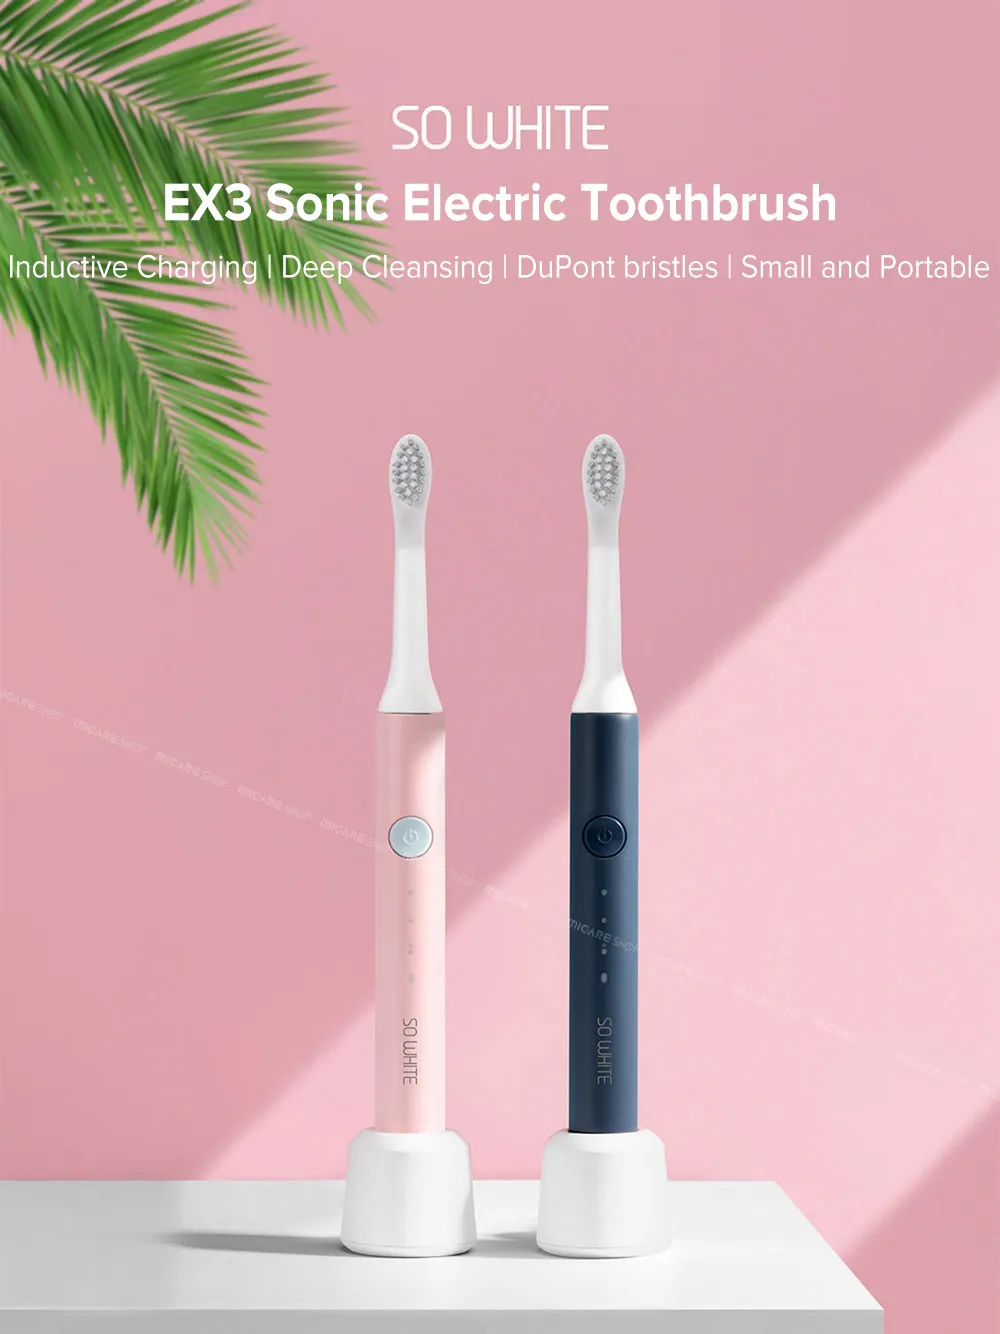 Soocas sonic elektrisk tandborste ultraljud automatisk tandborste Vattentät rengöring USB uppladdningsbar så vit ex3 pinjing